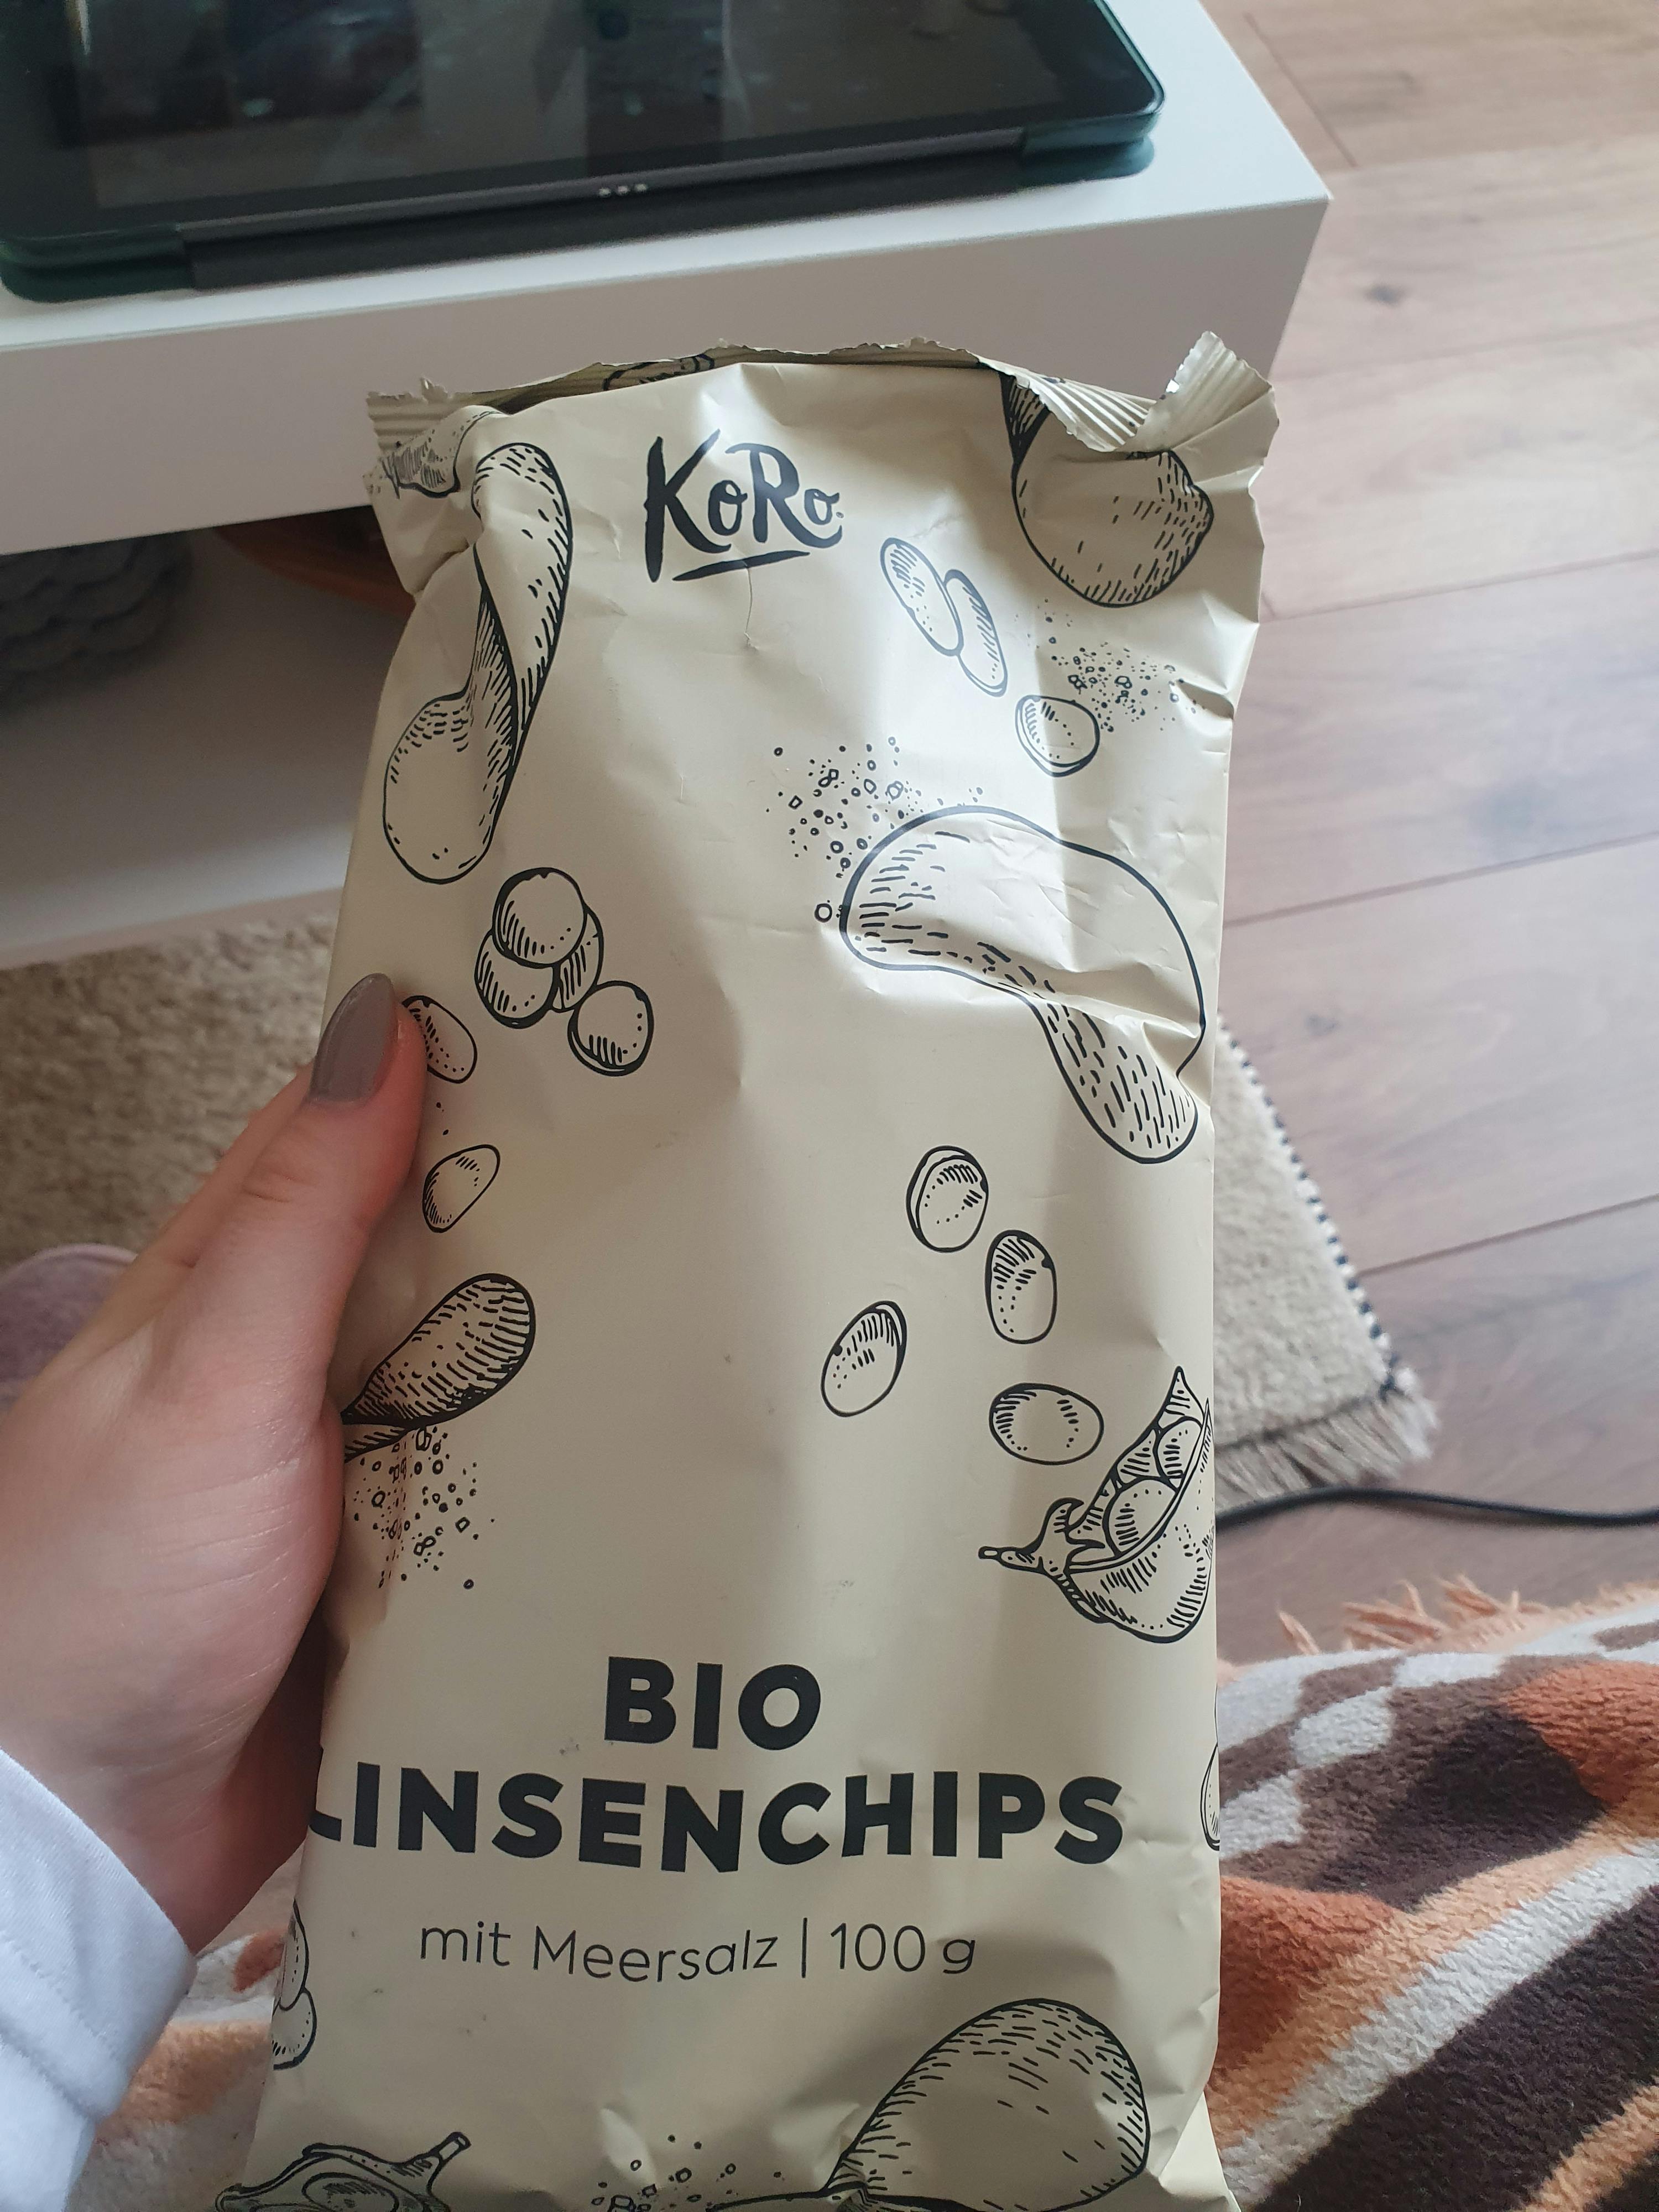 Bio Linsenchips mit Meersalz kaufen